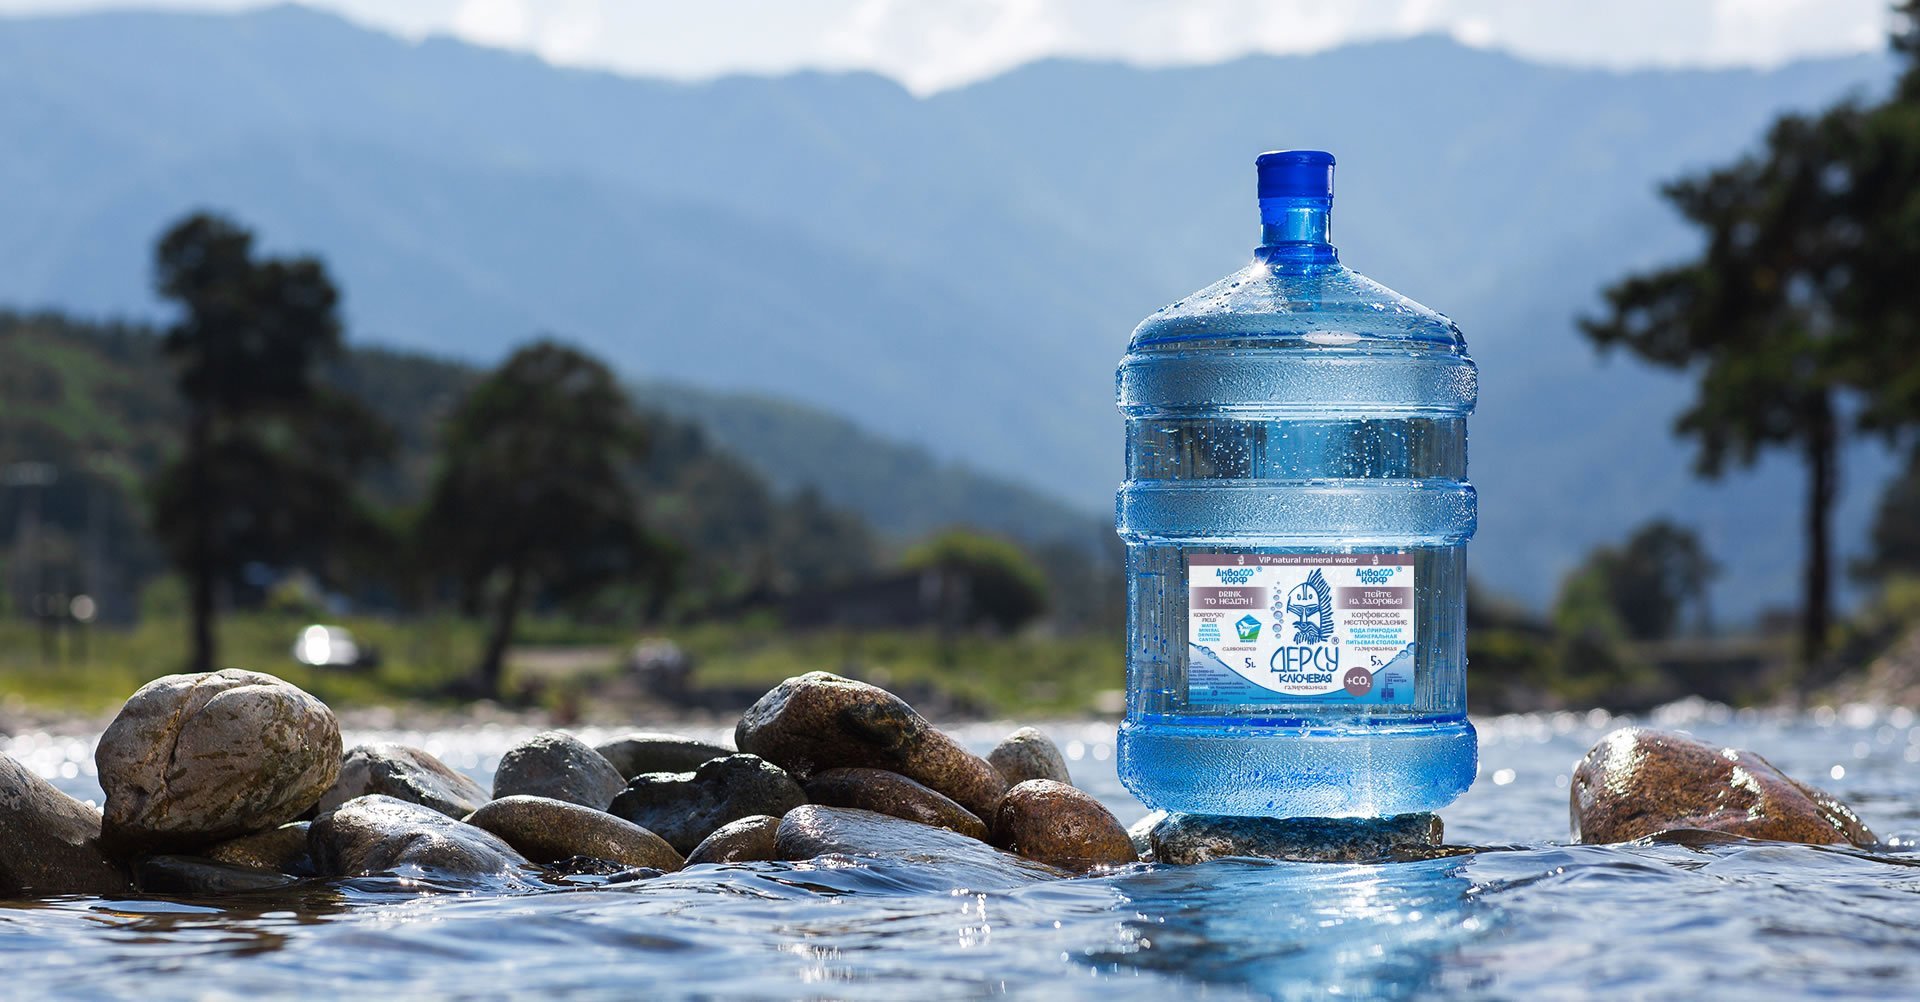 Бассейн питьевой воды. Бутылка для воды. Вода в бутылях. Питье воды. Чистая вода.